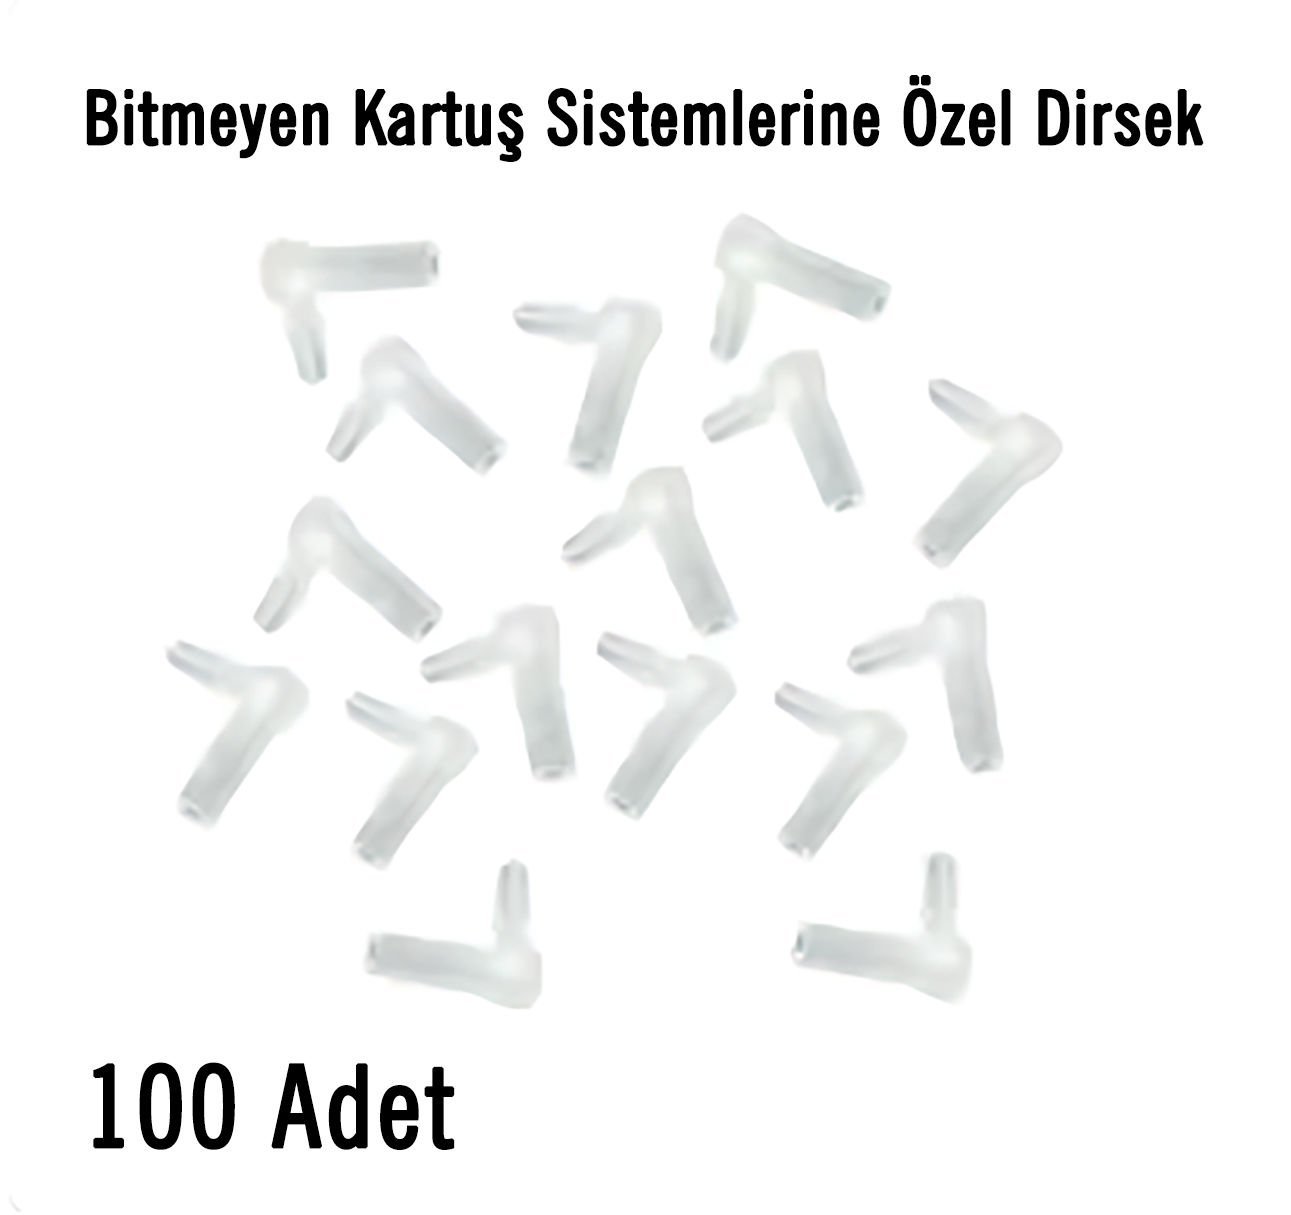 DİRSEK (100 ADET)